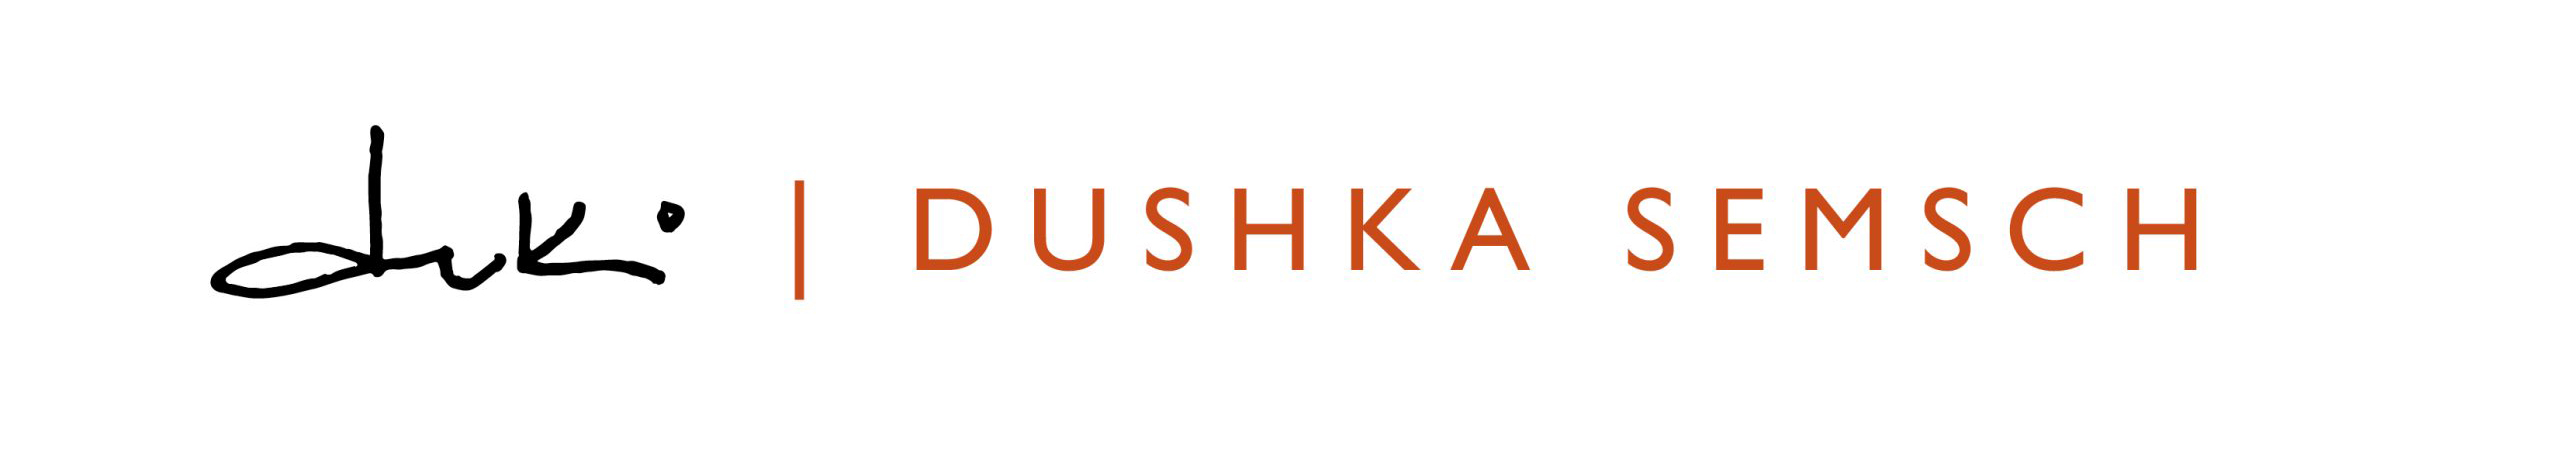 logo-DUKI-DUSHKASEMSCH Cel